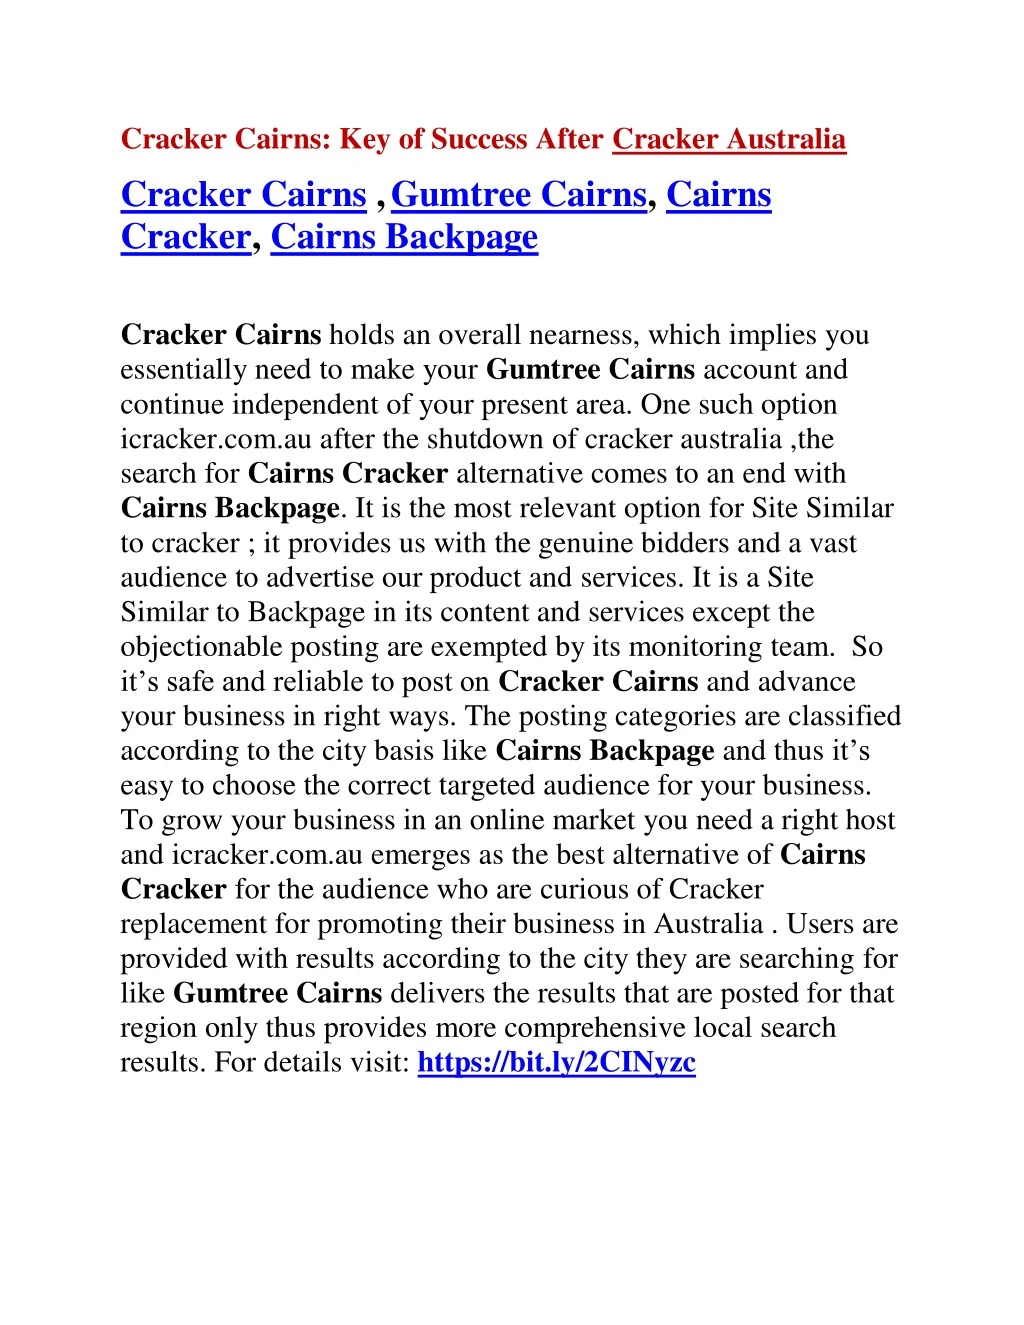 cracker cairns key of success after cracker